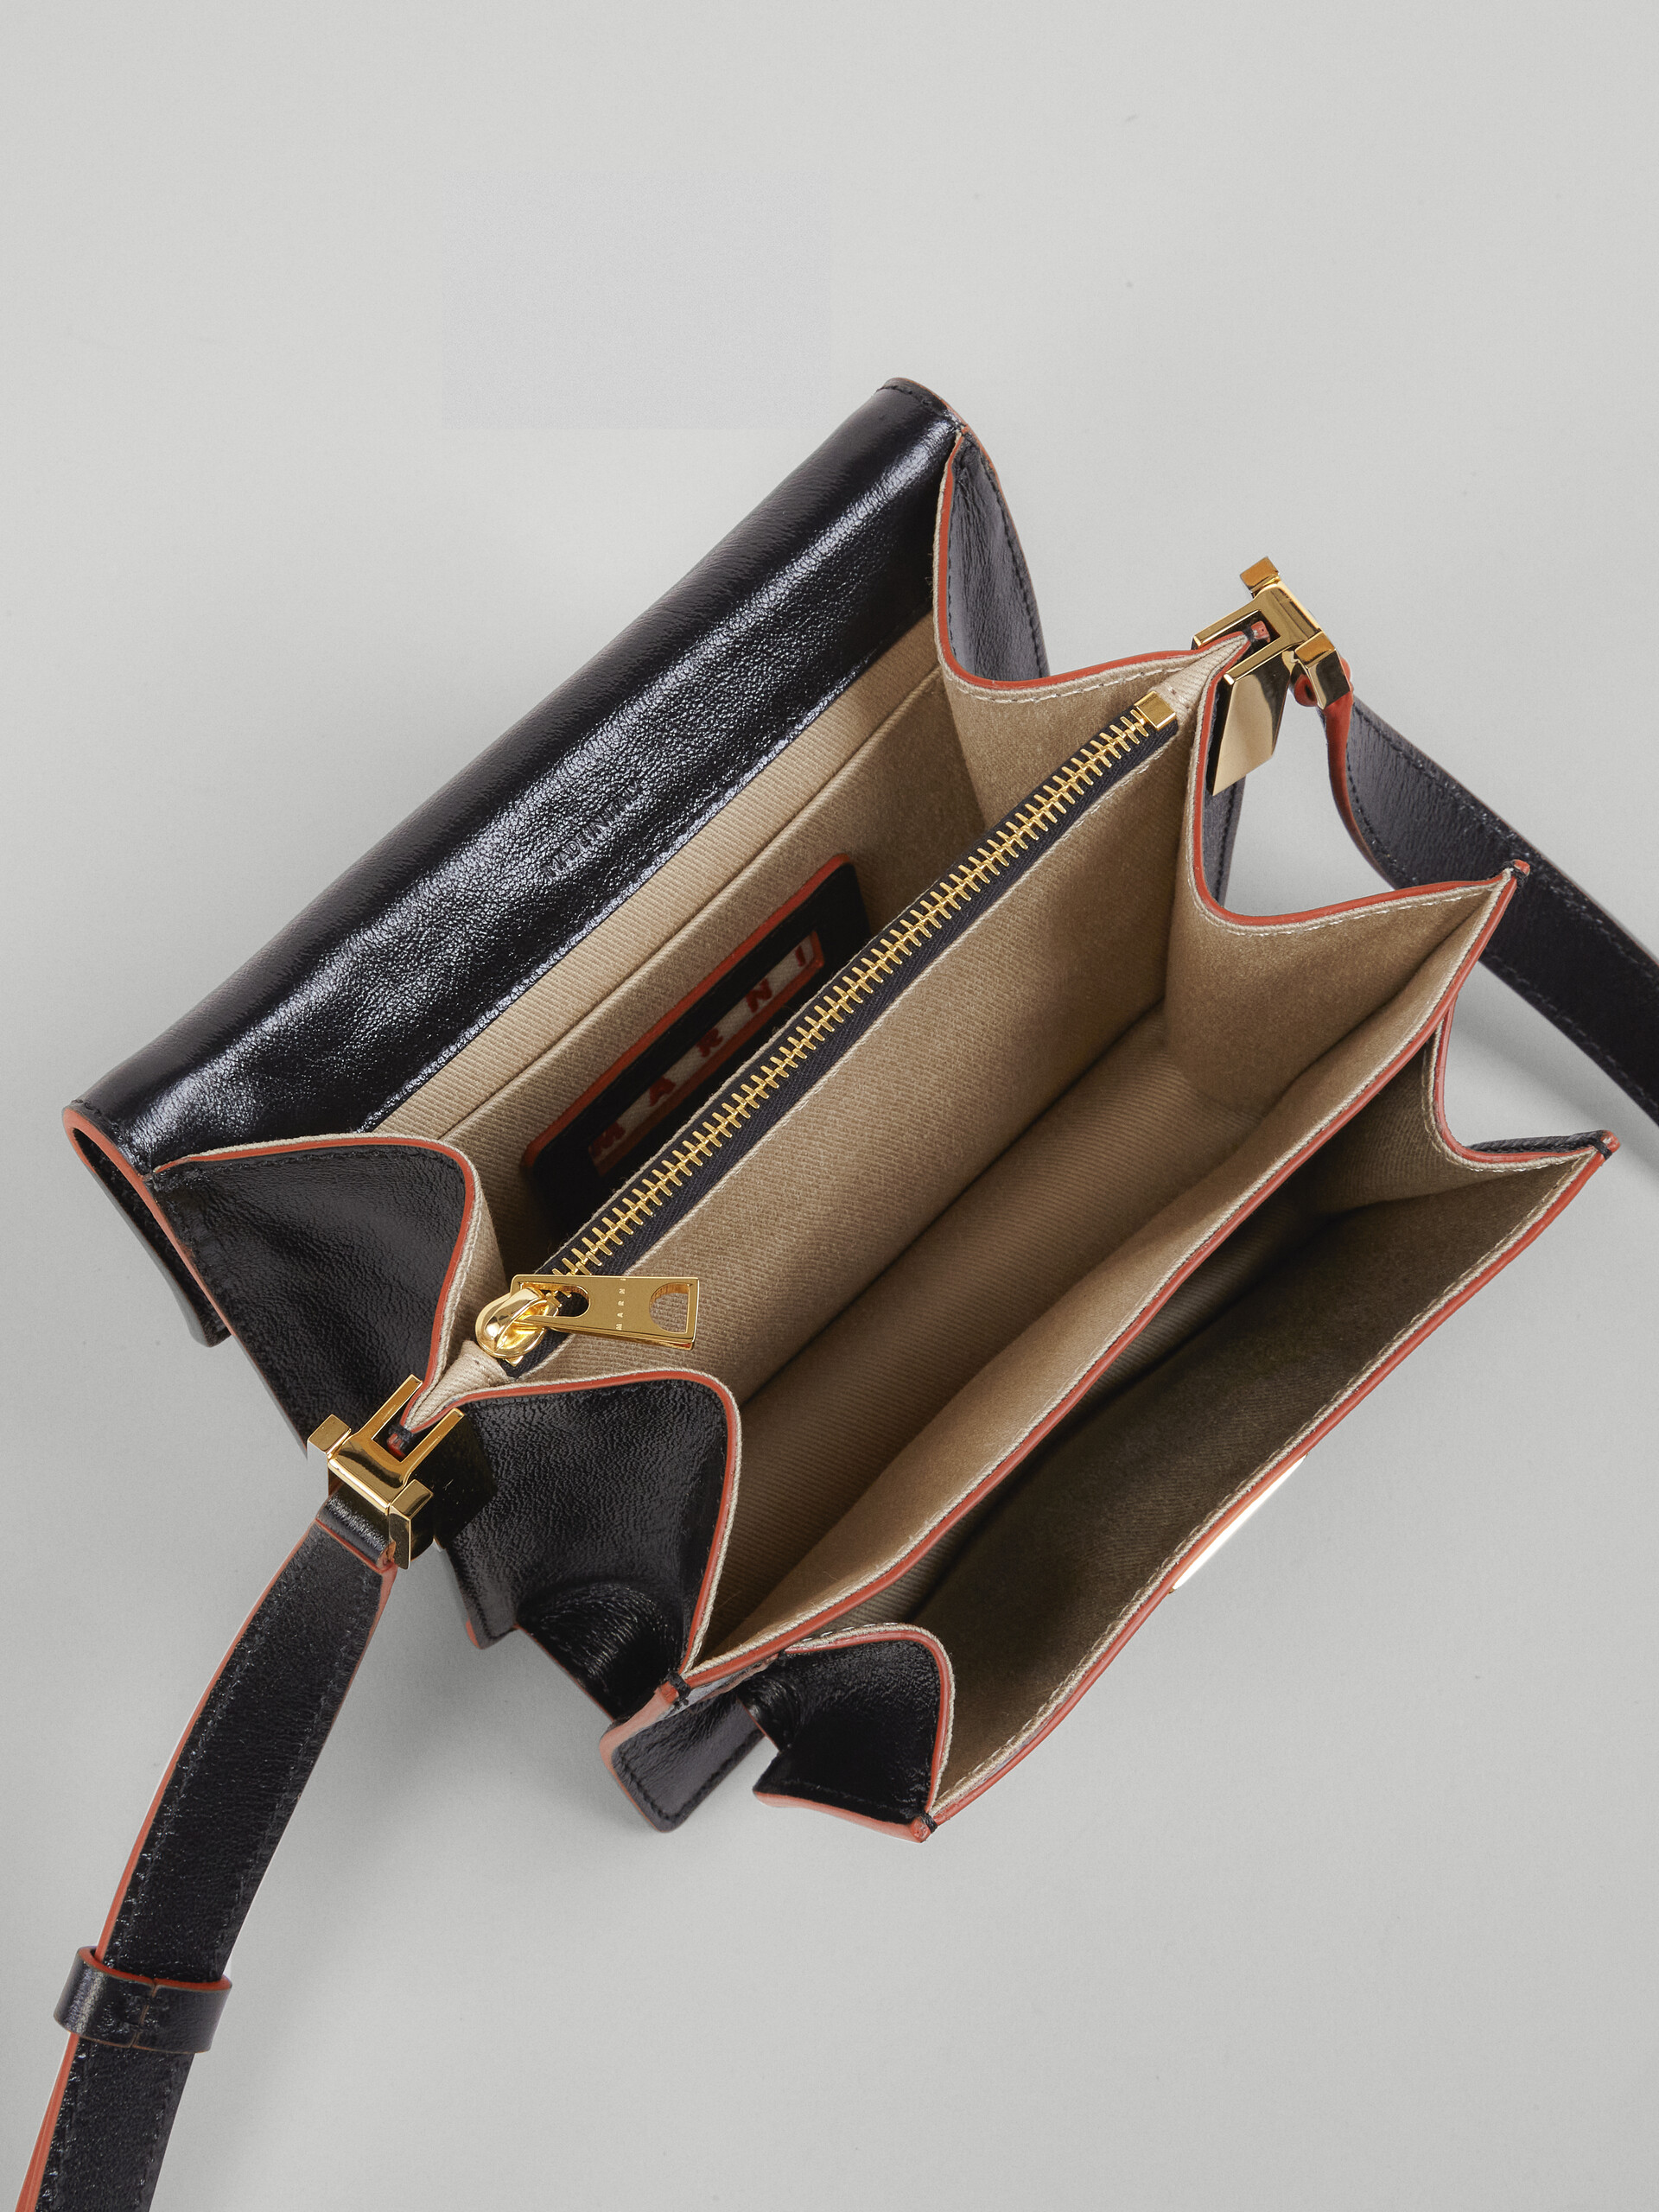 TRUNK SOFT bag mini in vitello bottalato nero - Borse a spalla - Image 5